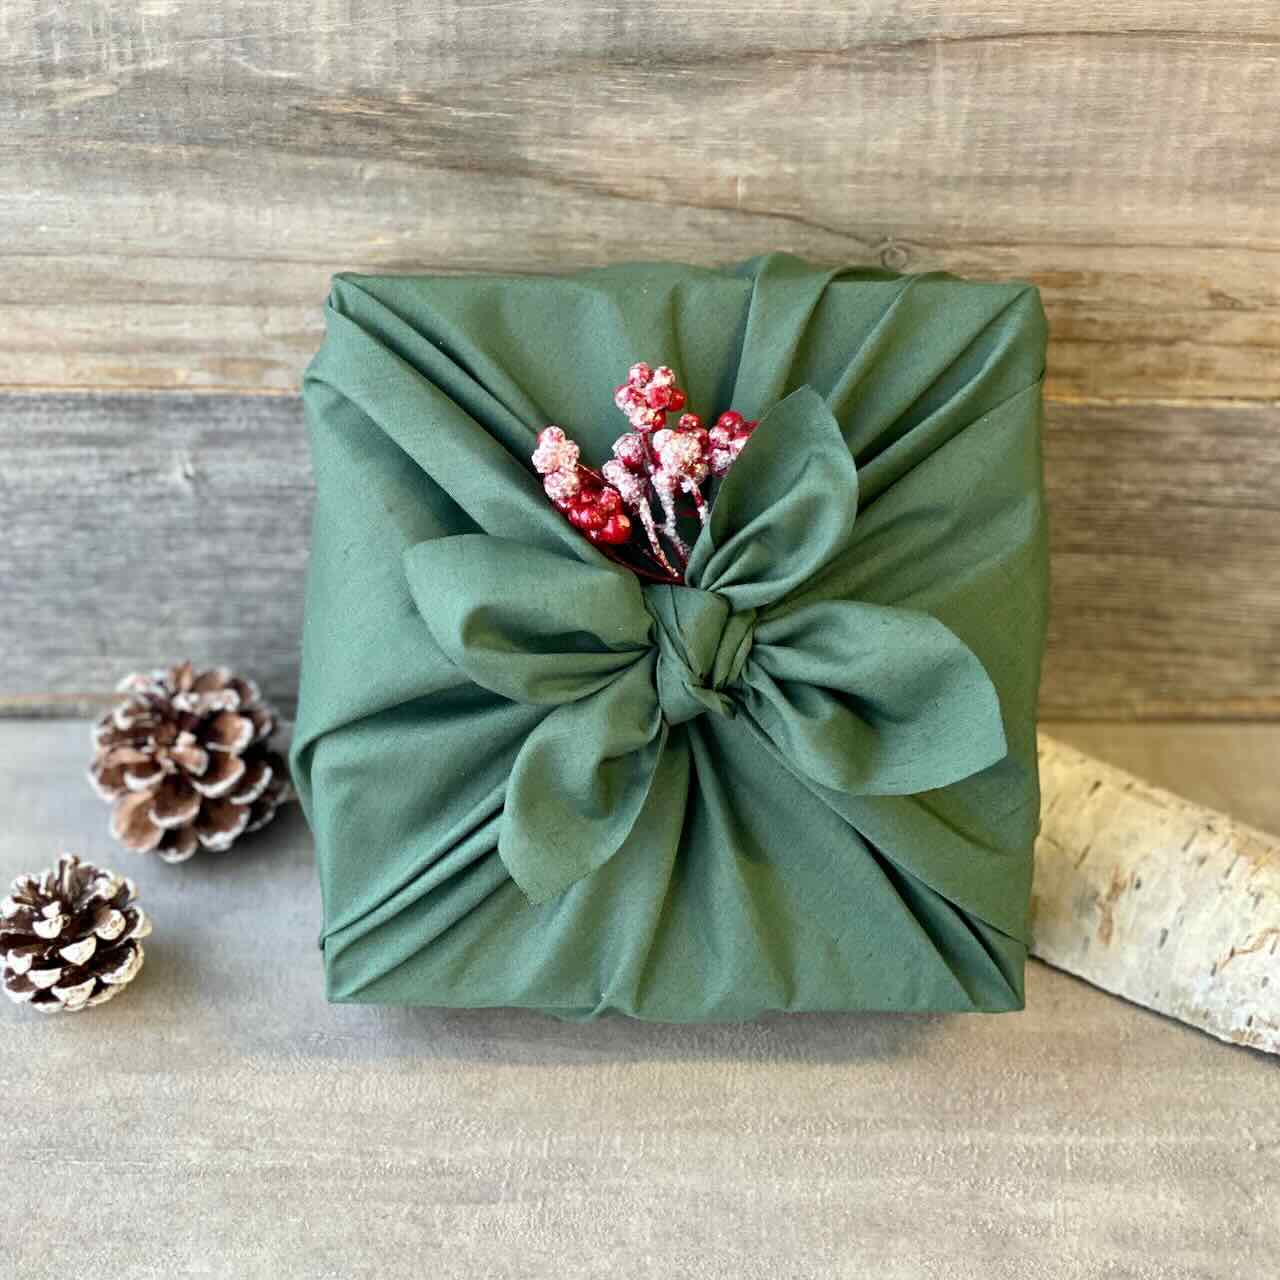 Furoshiki reusable gift wrapping cloths - Small